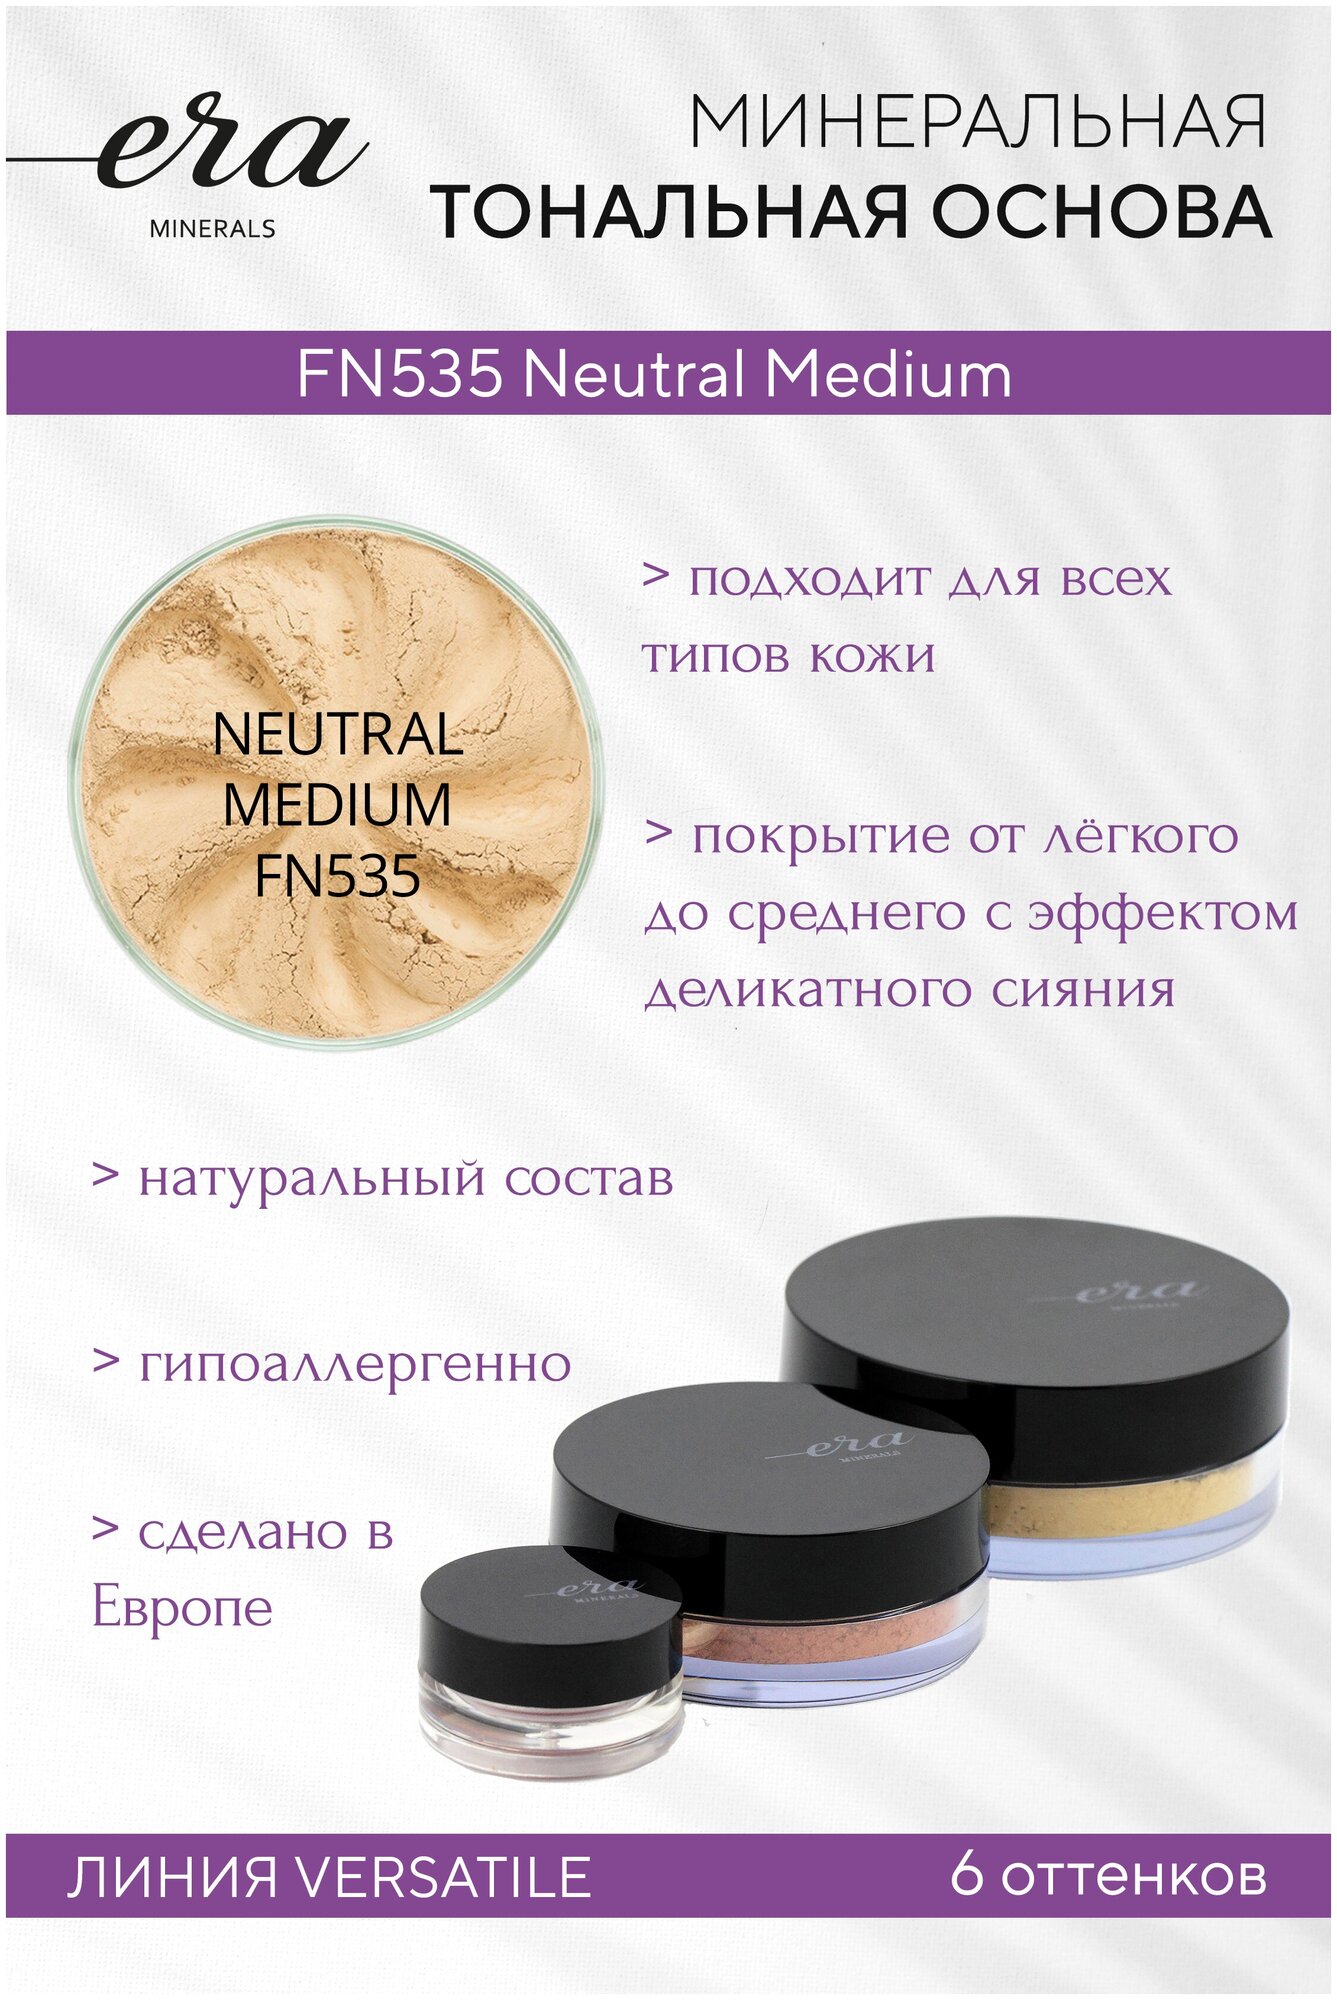 Era Minerals Минеральная тональная основа (пудра) Versatile с эффектом легкого мерцания FN535